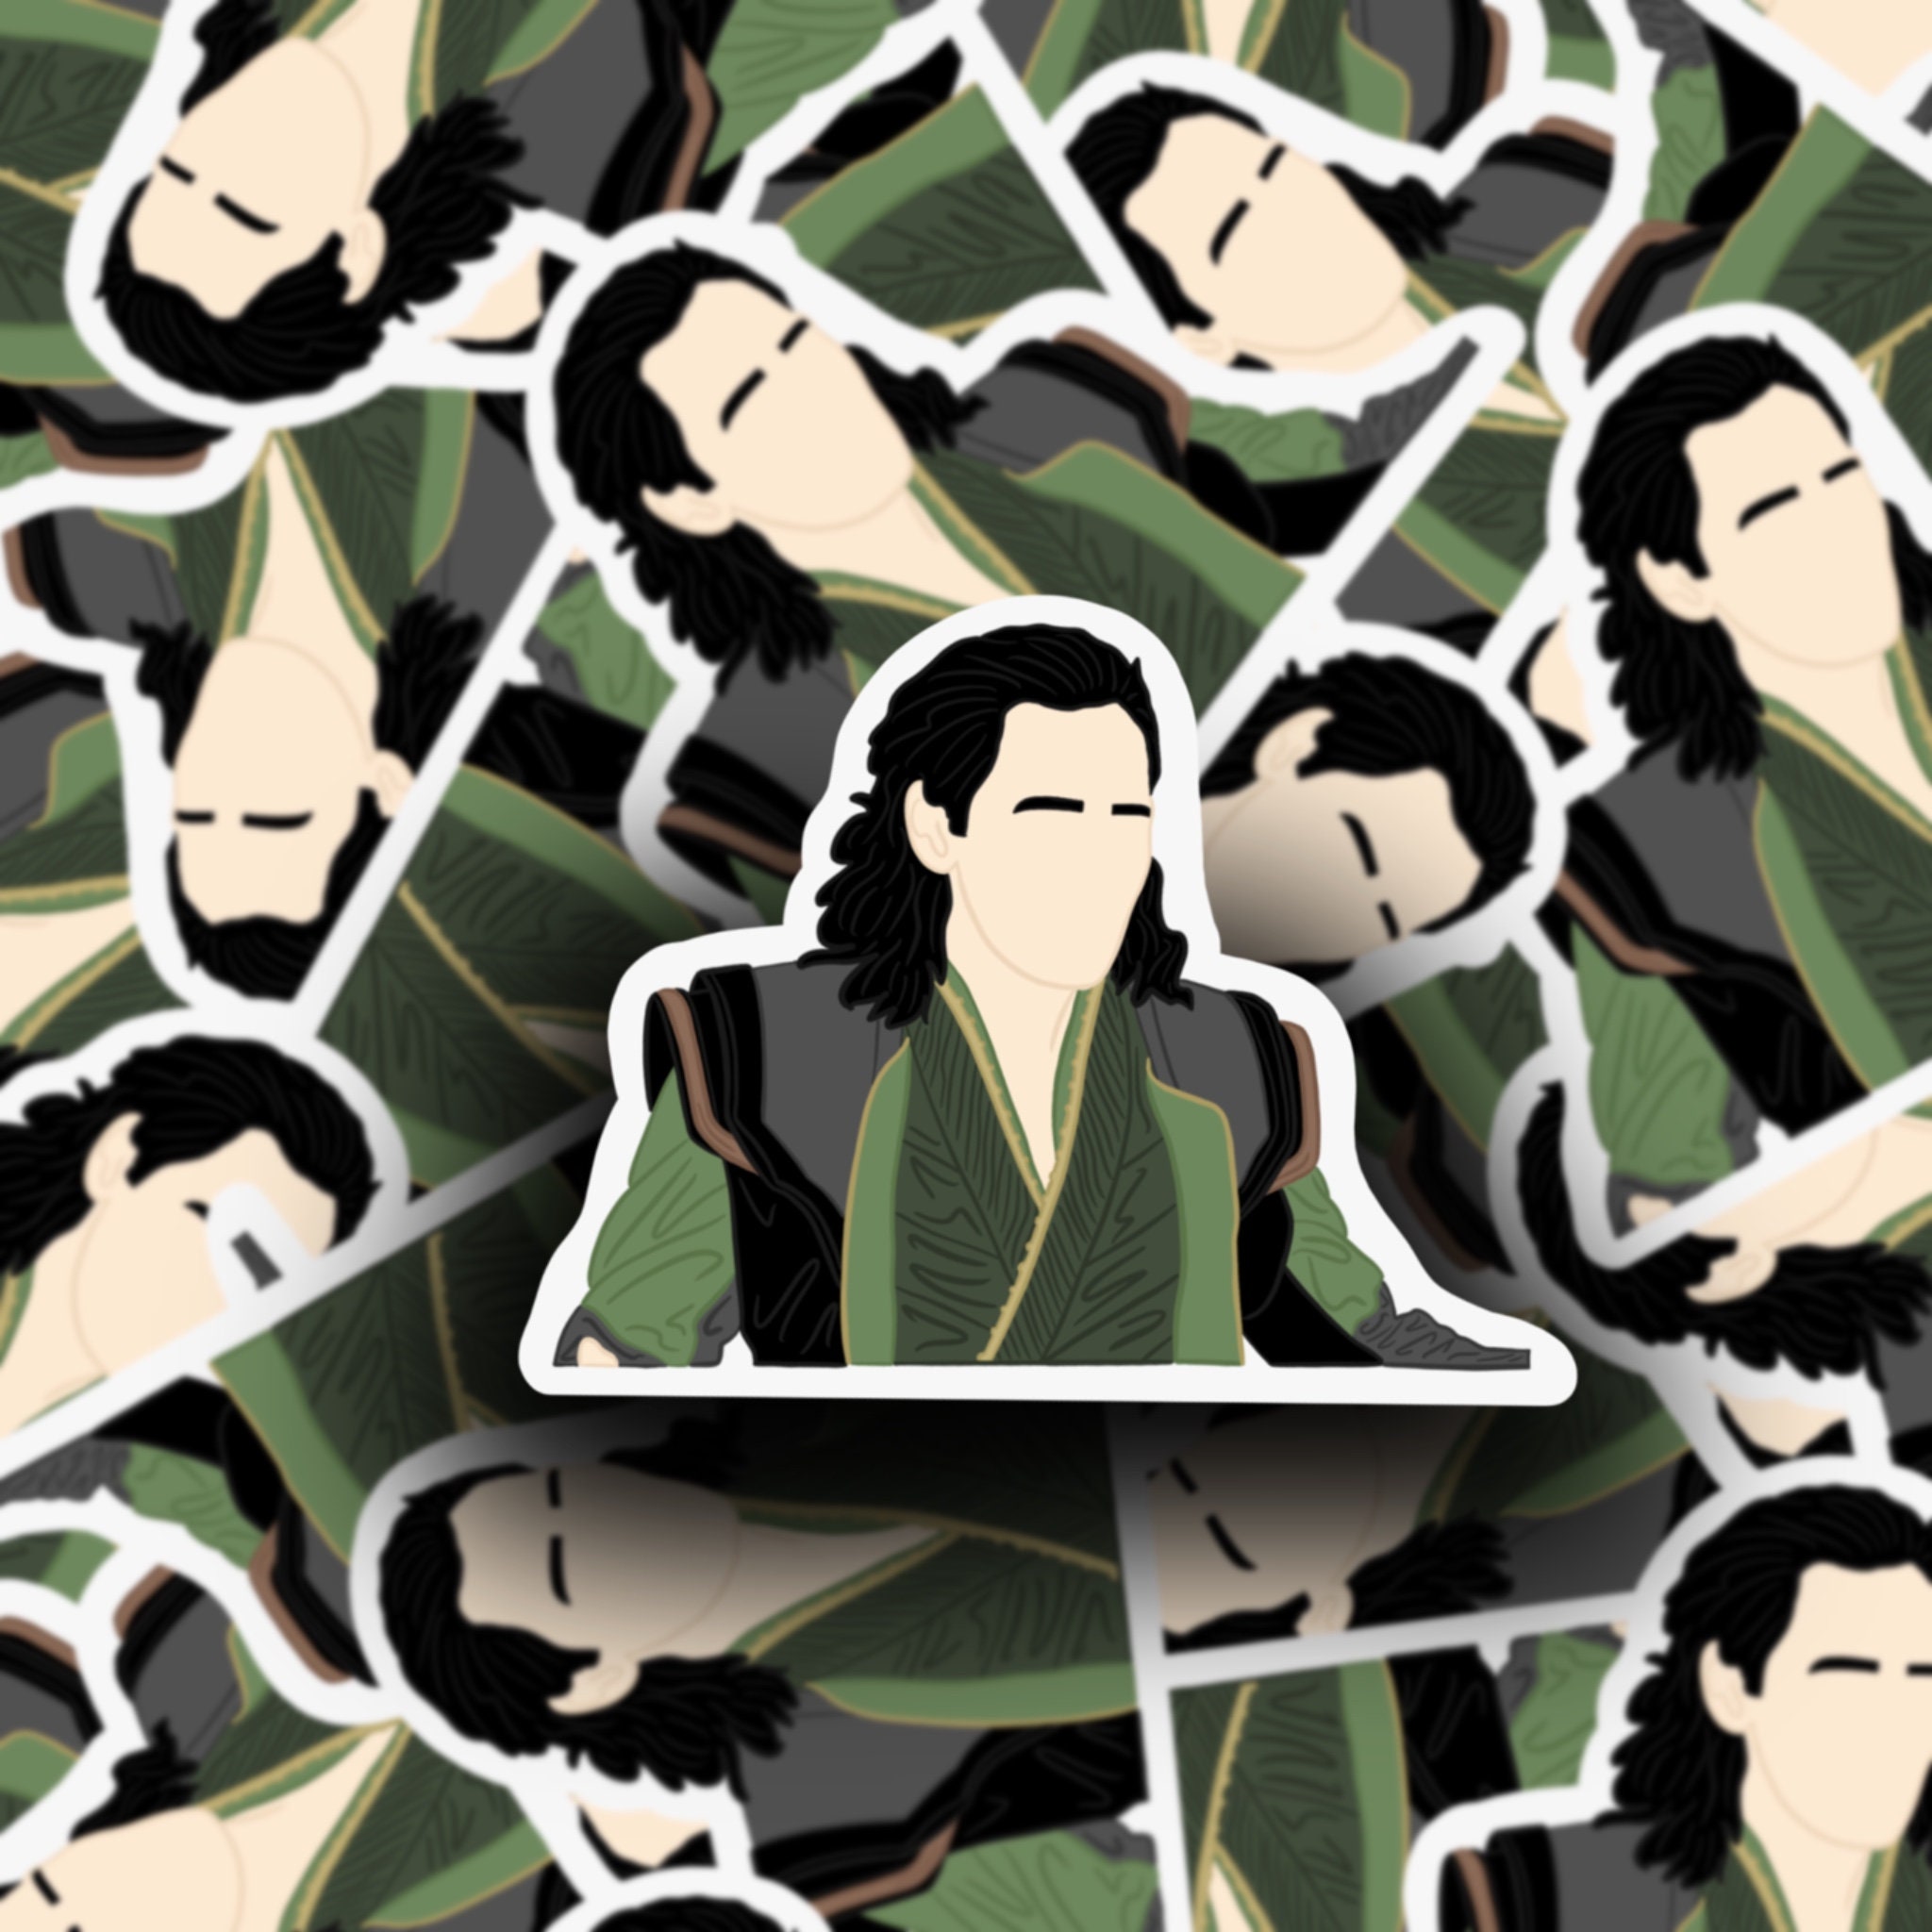 Loki Emoji  Sticker for Sale by torimrzn